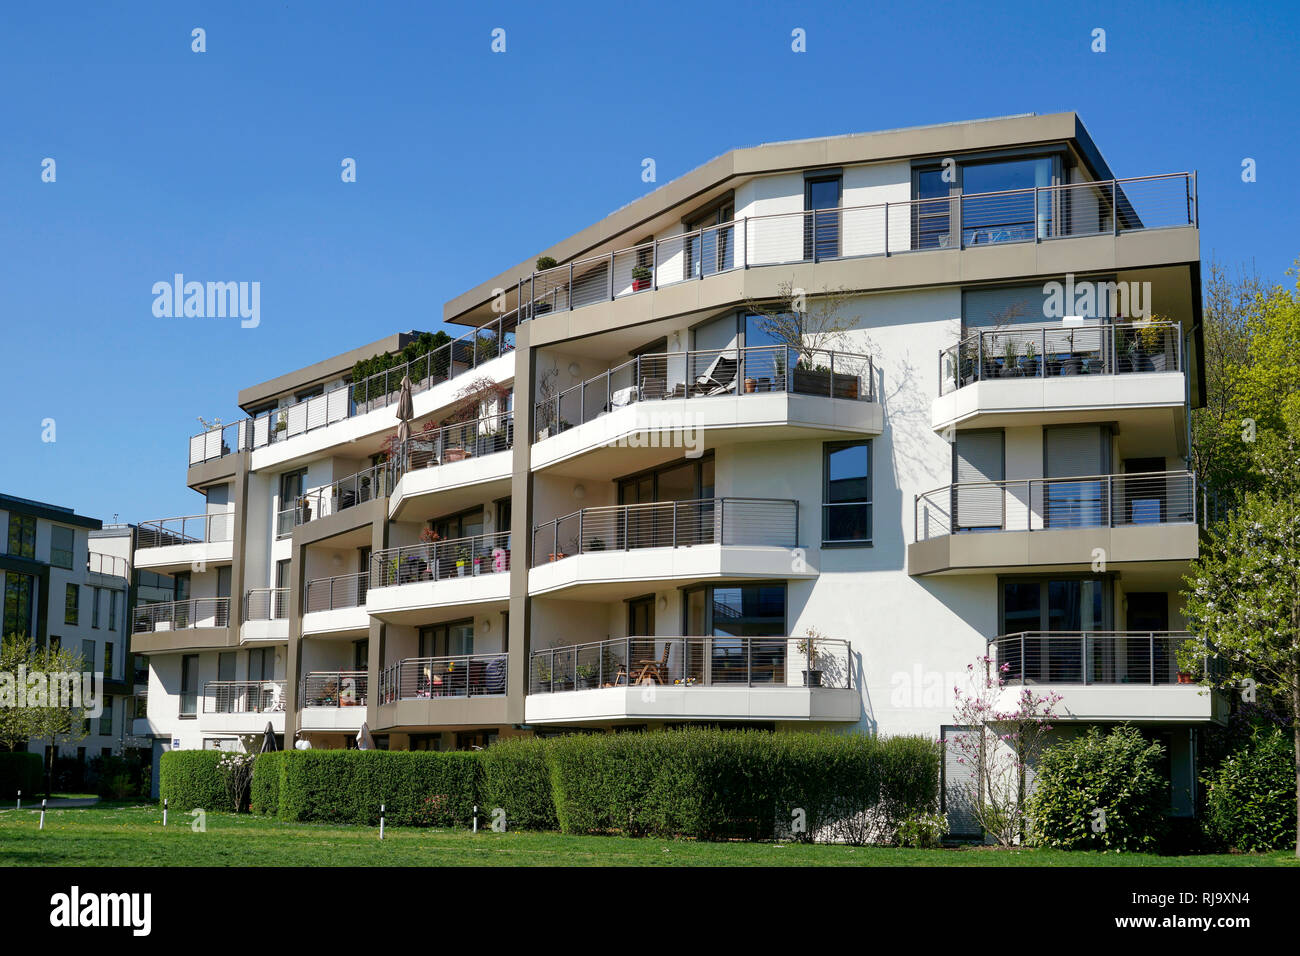 Deutschland, Bayern München Neuhausen, Wohnanlage, balkone, Grünanlage Foto Stock